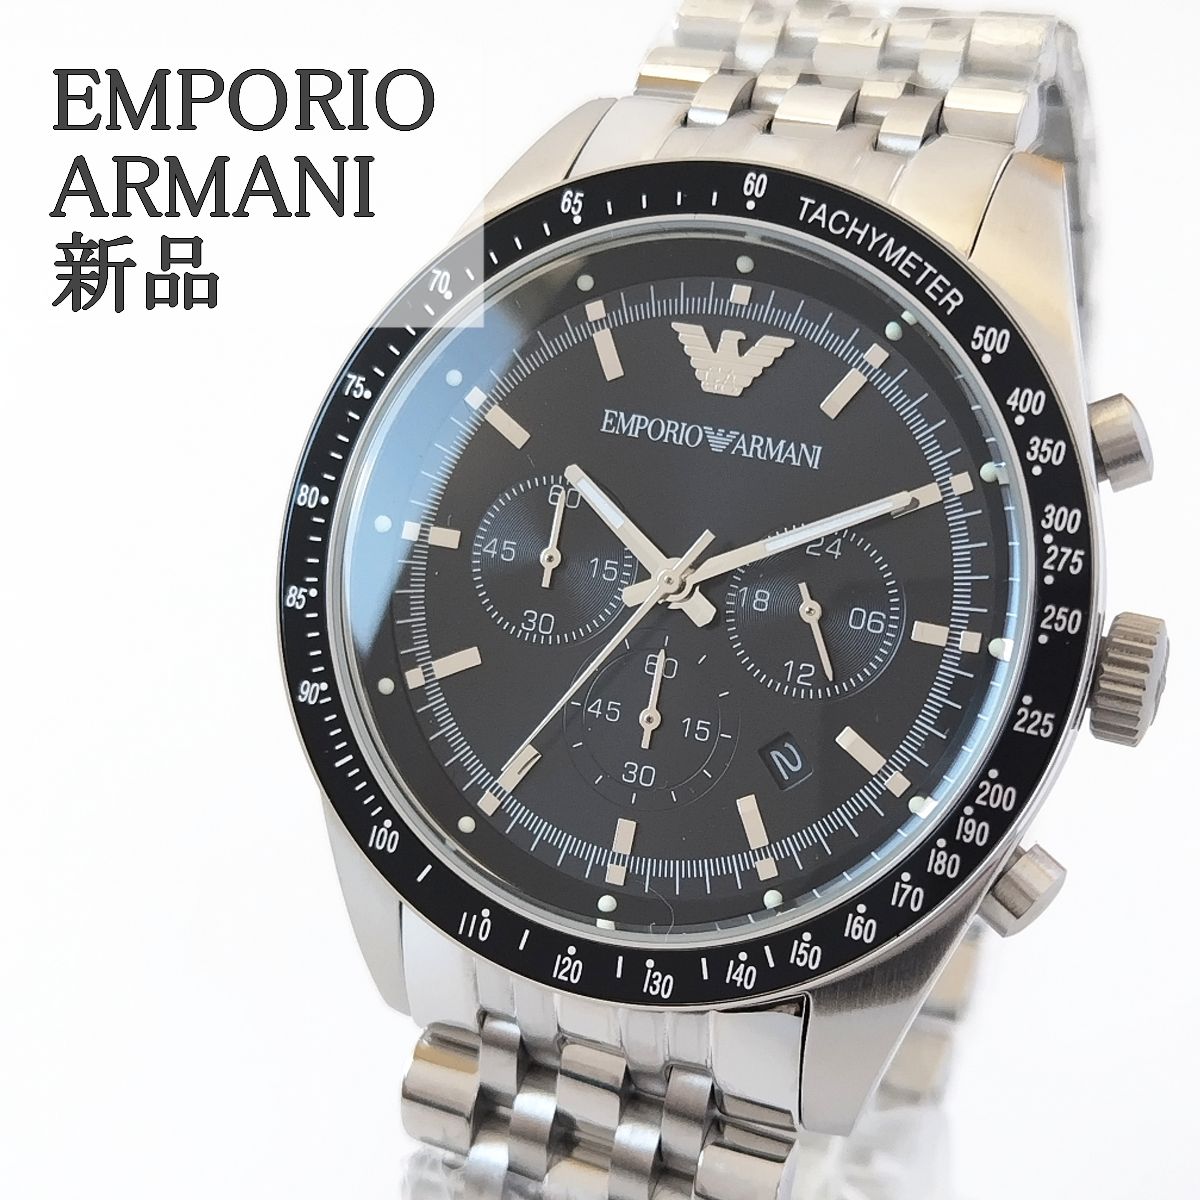 10,800円シルバー/ブラック新品メンズ腕時計EMPORIO ARMANIクロノグラフ日付